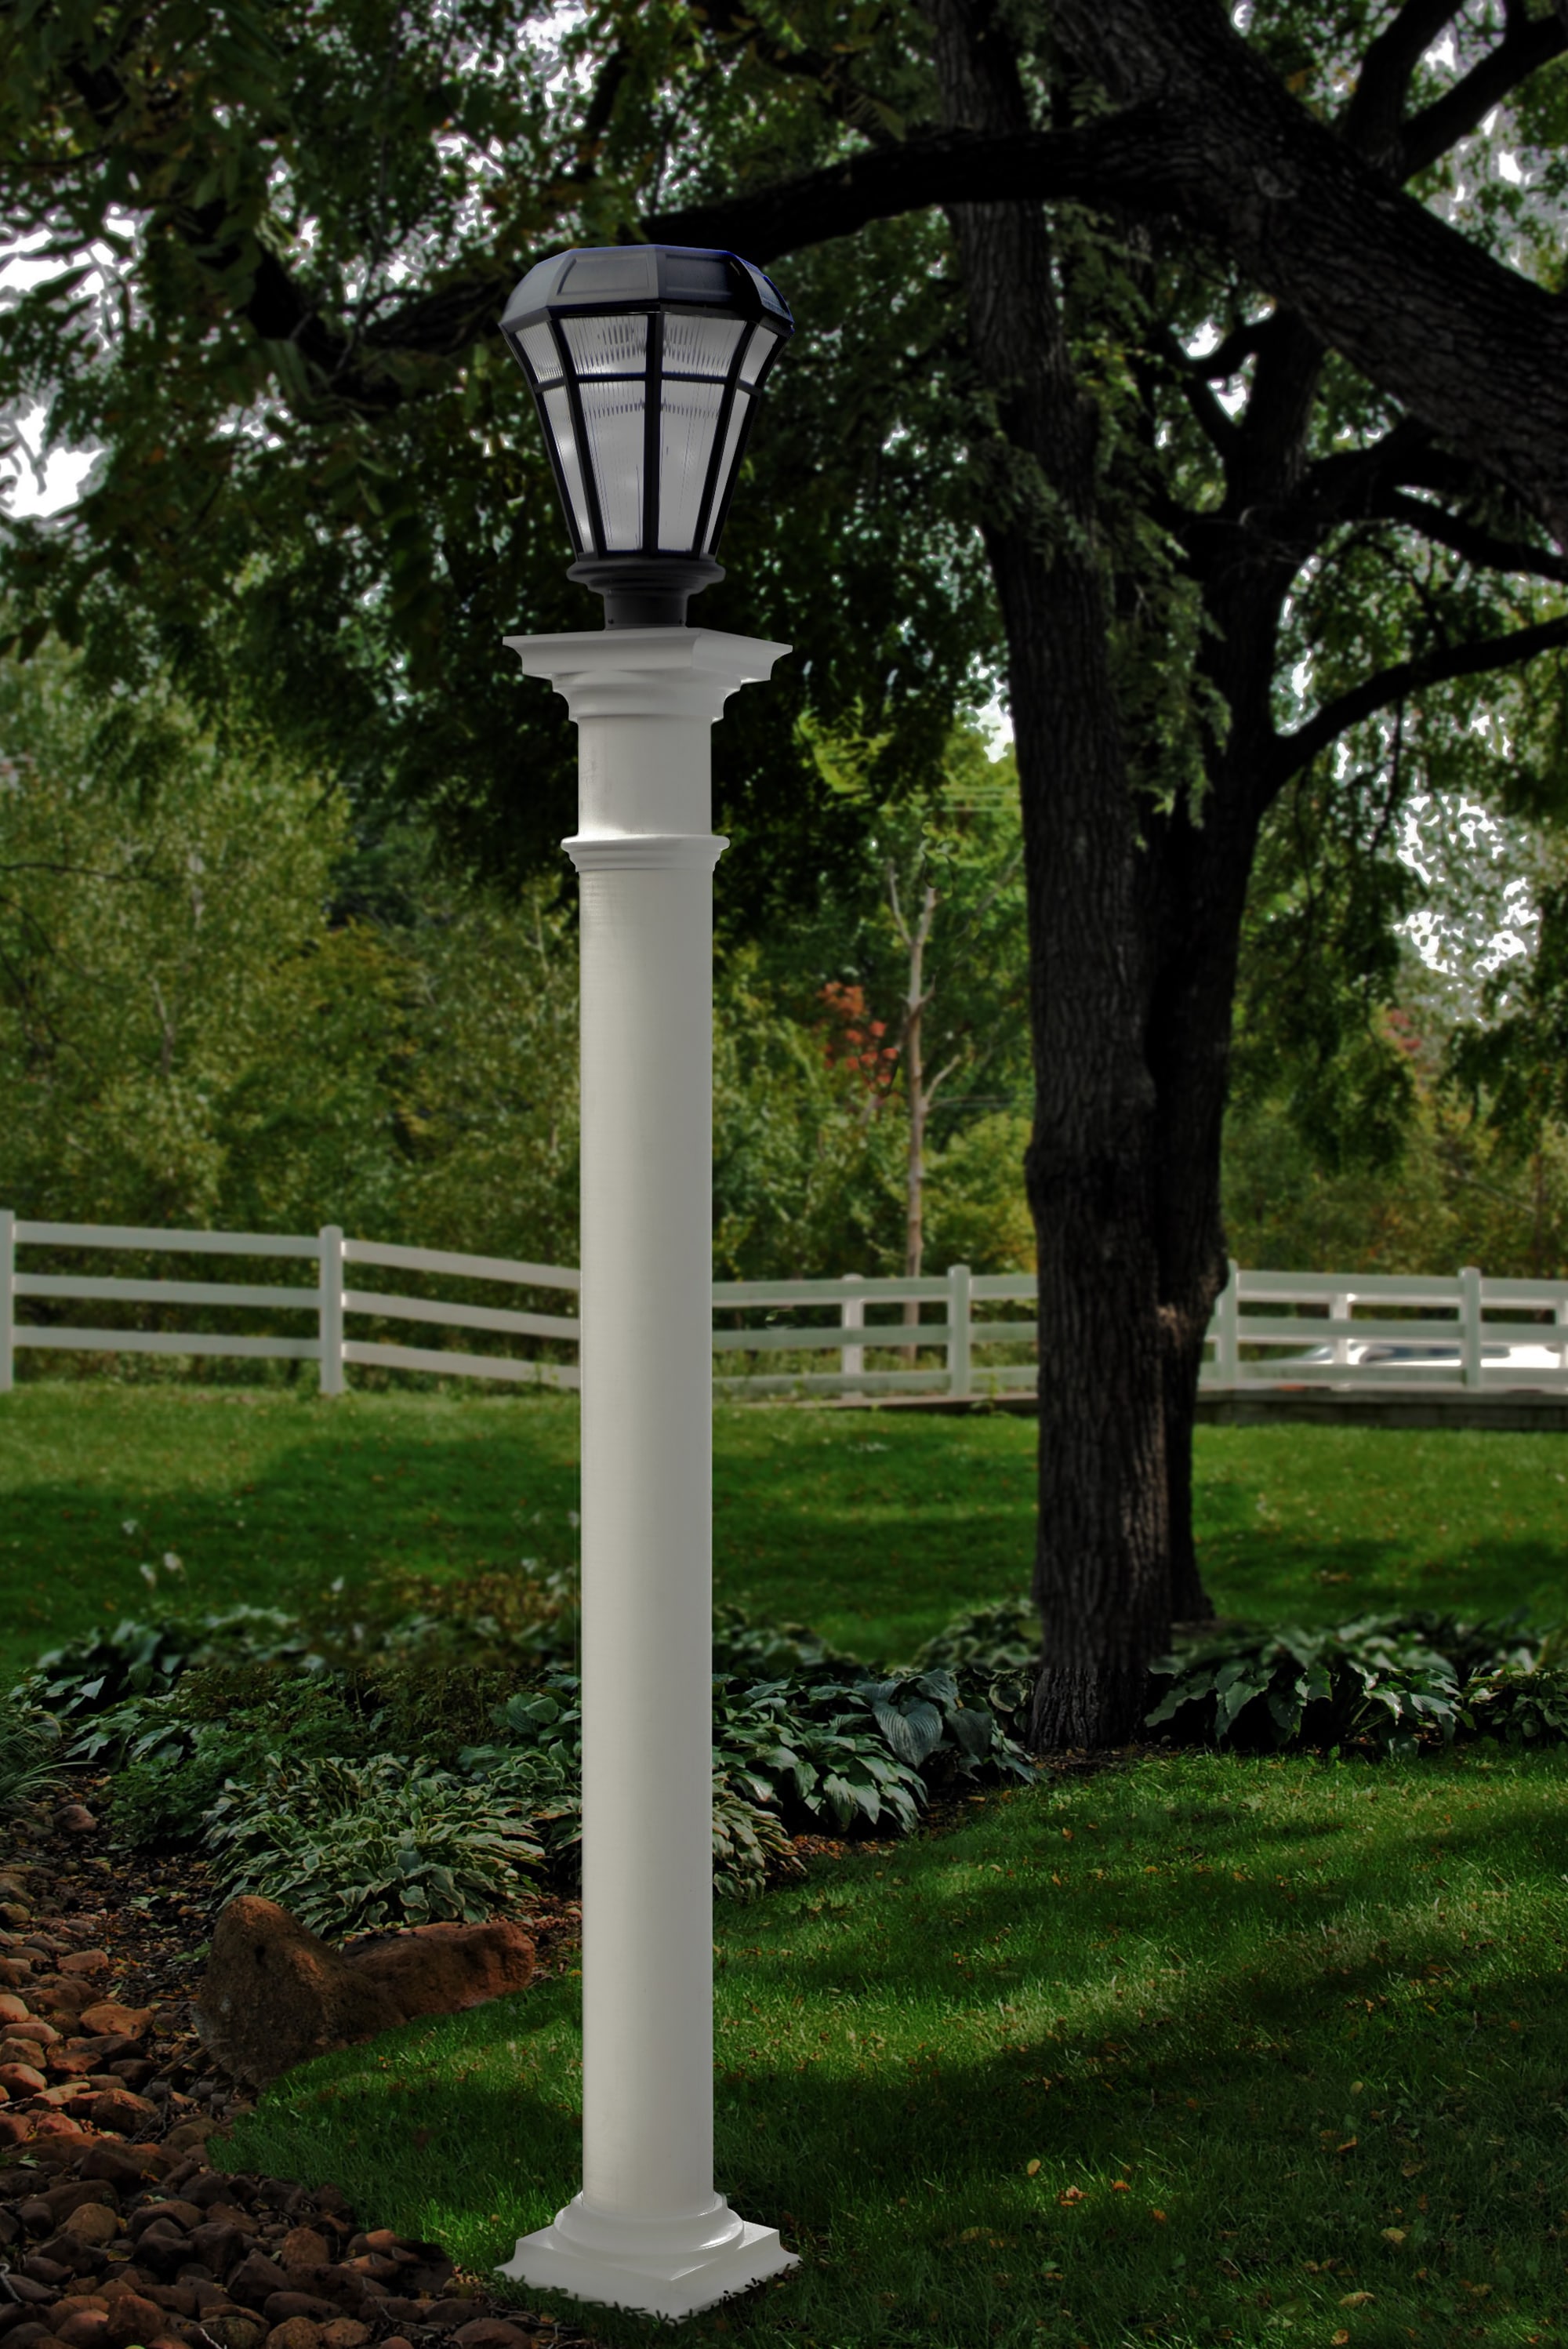 x4 Traditional Outside Garden Lamp Post Lights LED Lightbulb Outdoor Lighting 